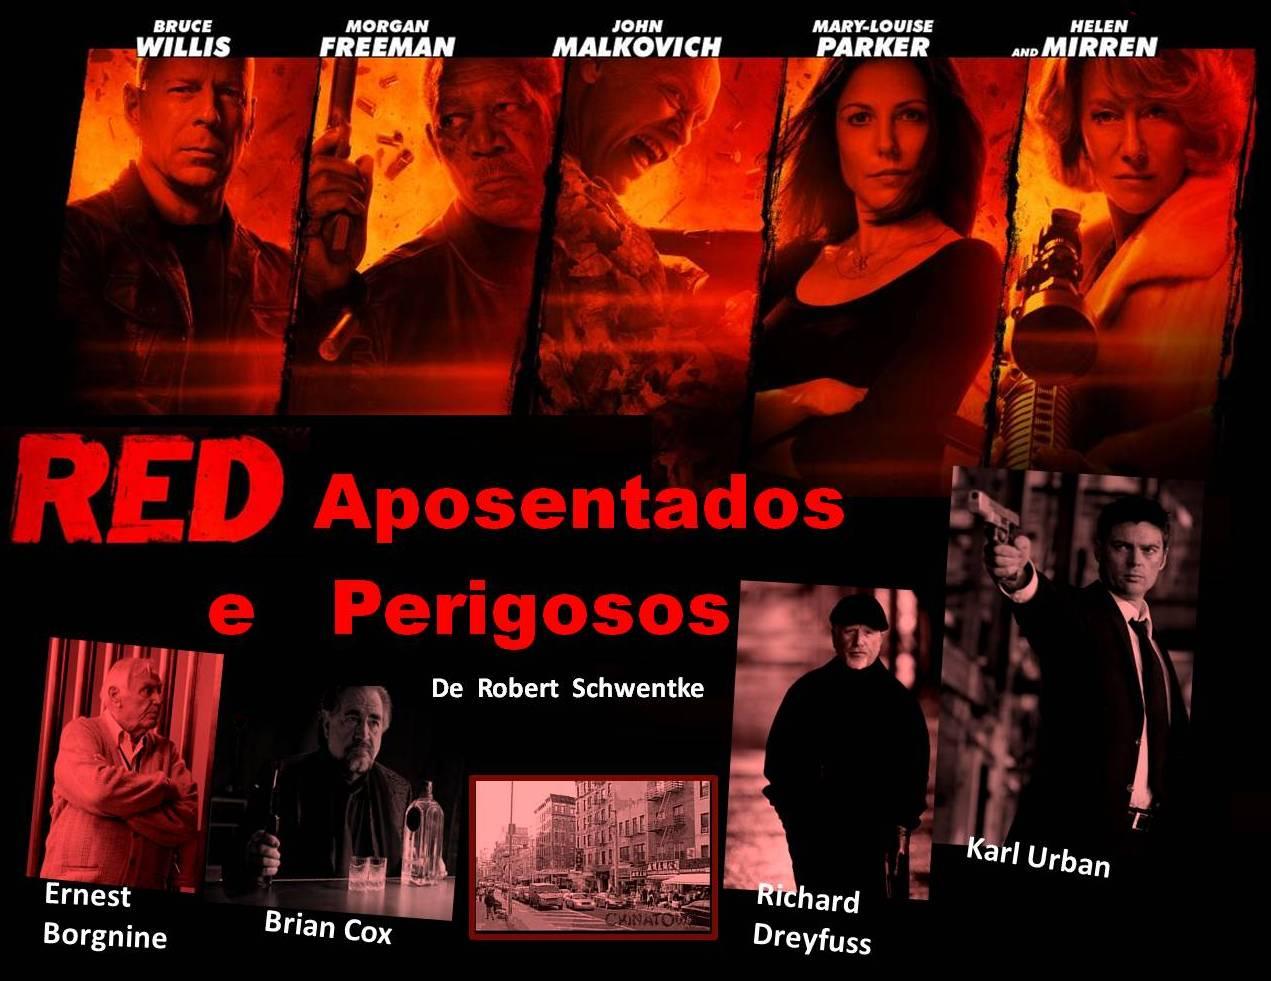 RED 2 - Aposentados e Ainda Mais Perigosos : Elenco, atores, equipa  técnica, produção - AdoroCinema